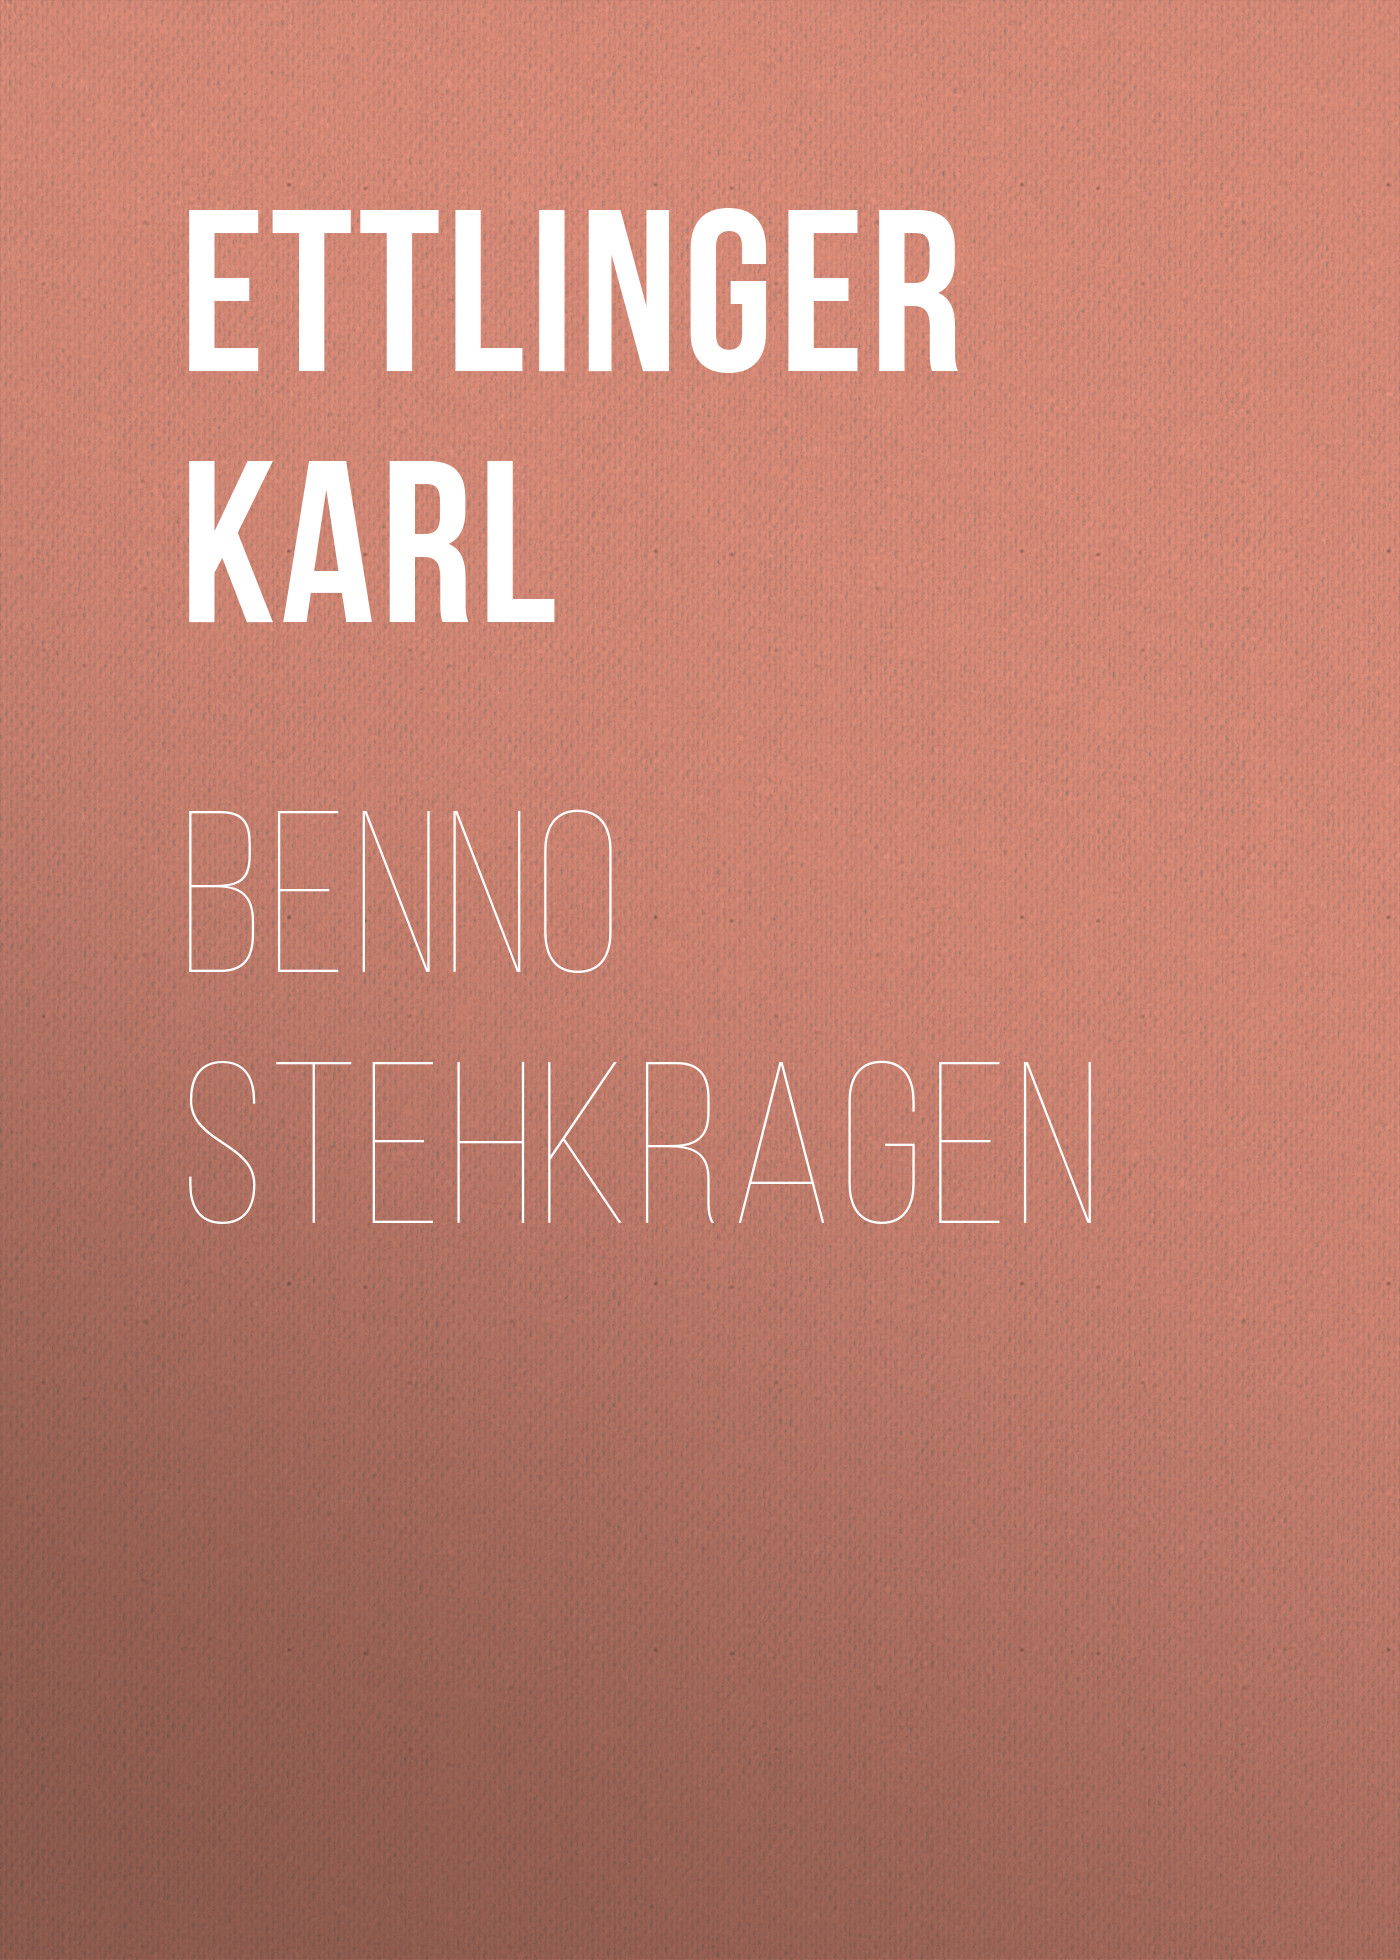 Книга Benno Stehkragen из серии , созданная Karl Ettlinger, может относится к жанру Зарубежная старинная литература, Зарубежная классика, Зарубежная фантастика. Стоимость электронной книги Benno Stehkragen с идентификатором 24714465 составляет 0 руб.